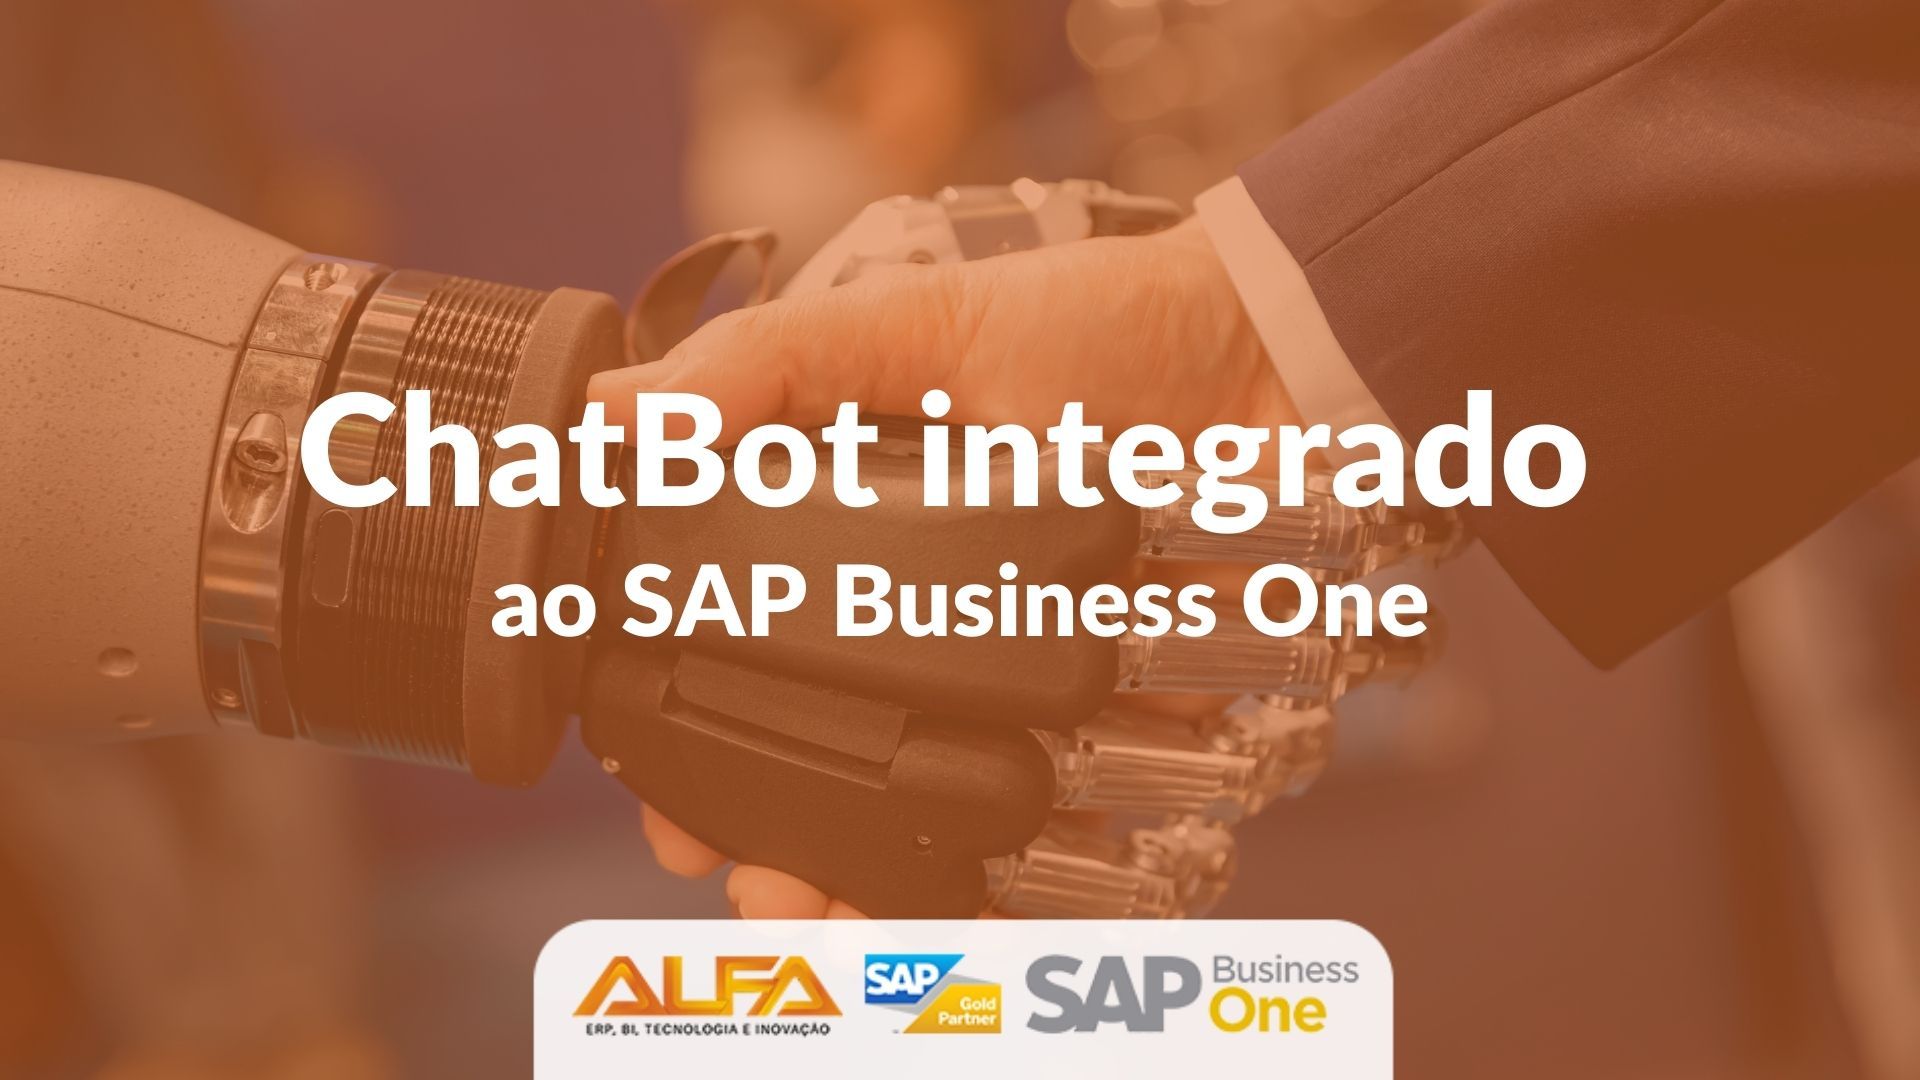 ChatBot integrado ao SAP Business One ChatBot integrado ao SAP Business One ChatBot integrado ao SAP Business One ChatBot integrado ao SAP Business One